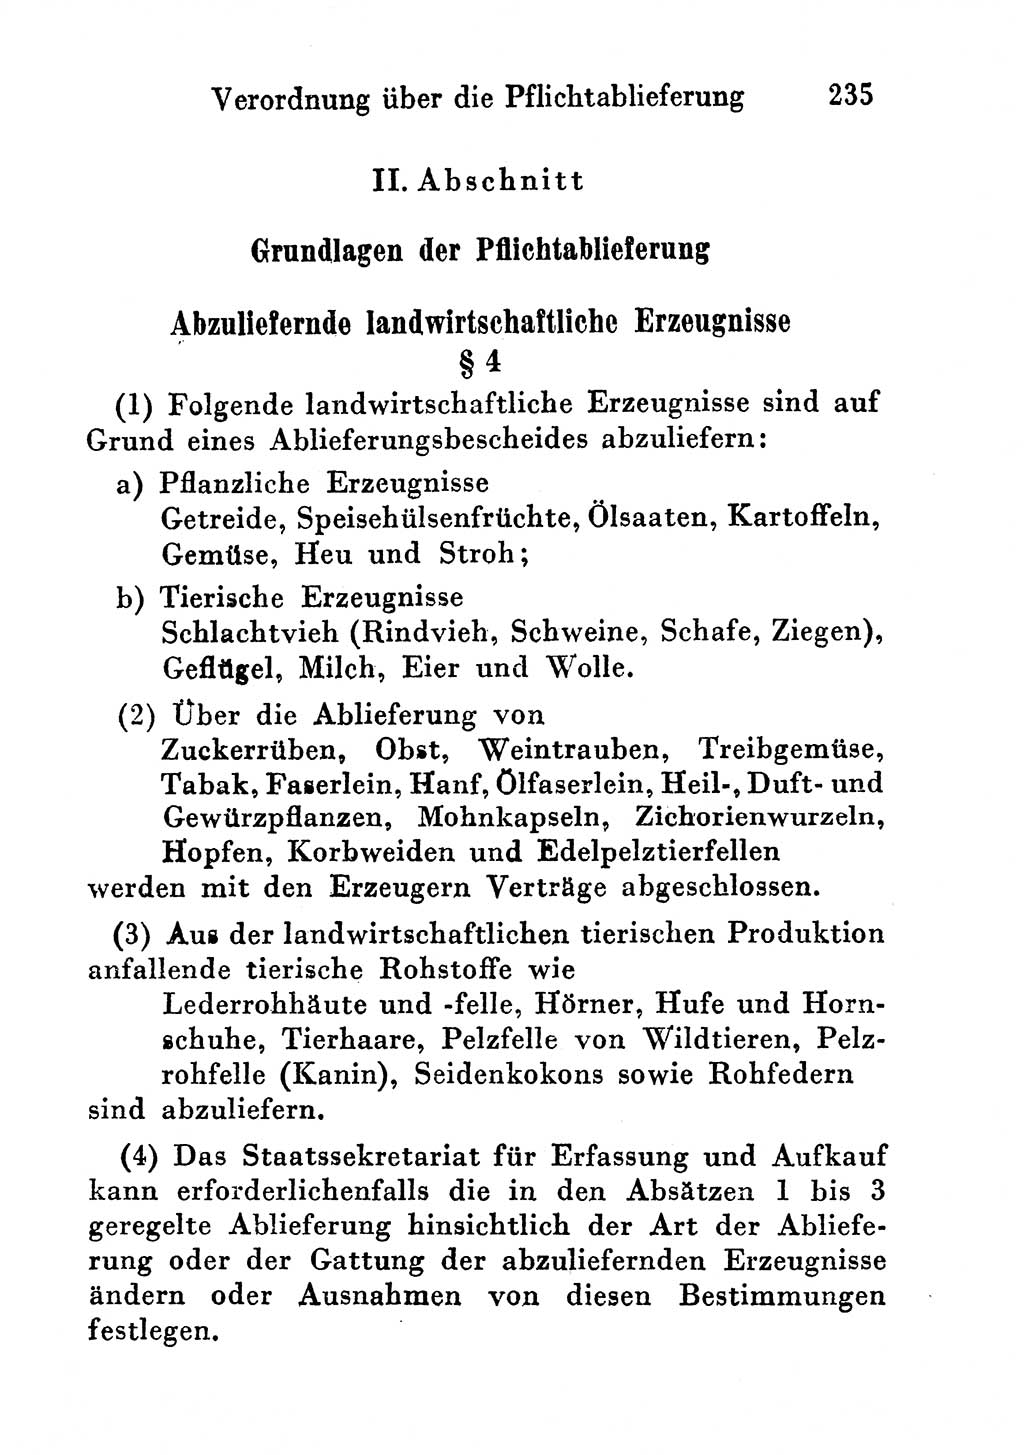 Strafgesetzbuch (StGB) und andere Strafgesetze [Deutsche Demokratische Republik (DDR)] 1956, Seite 235 (StGB Strafges. DDR 1956, S. 235)